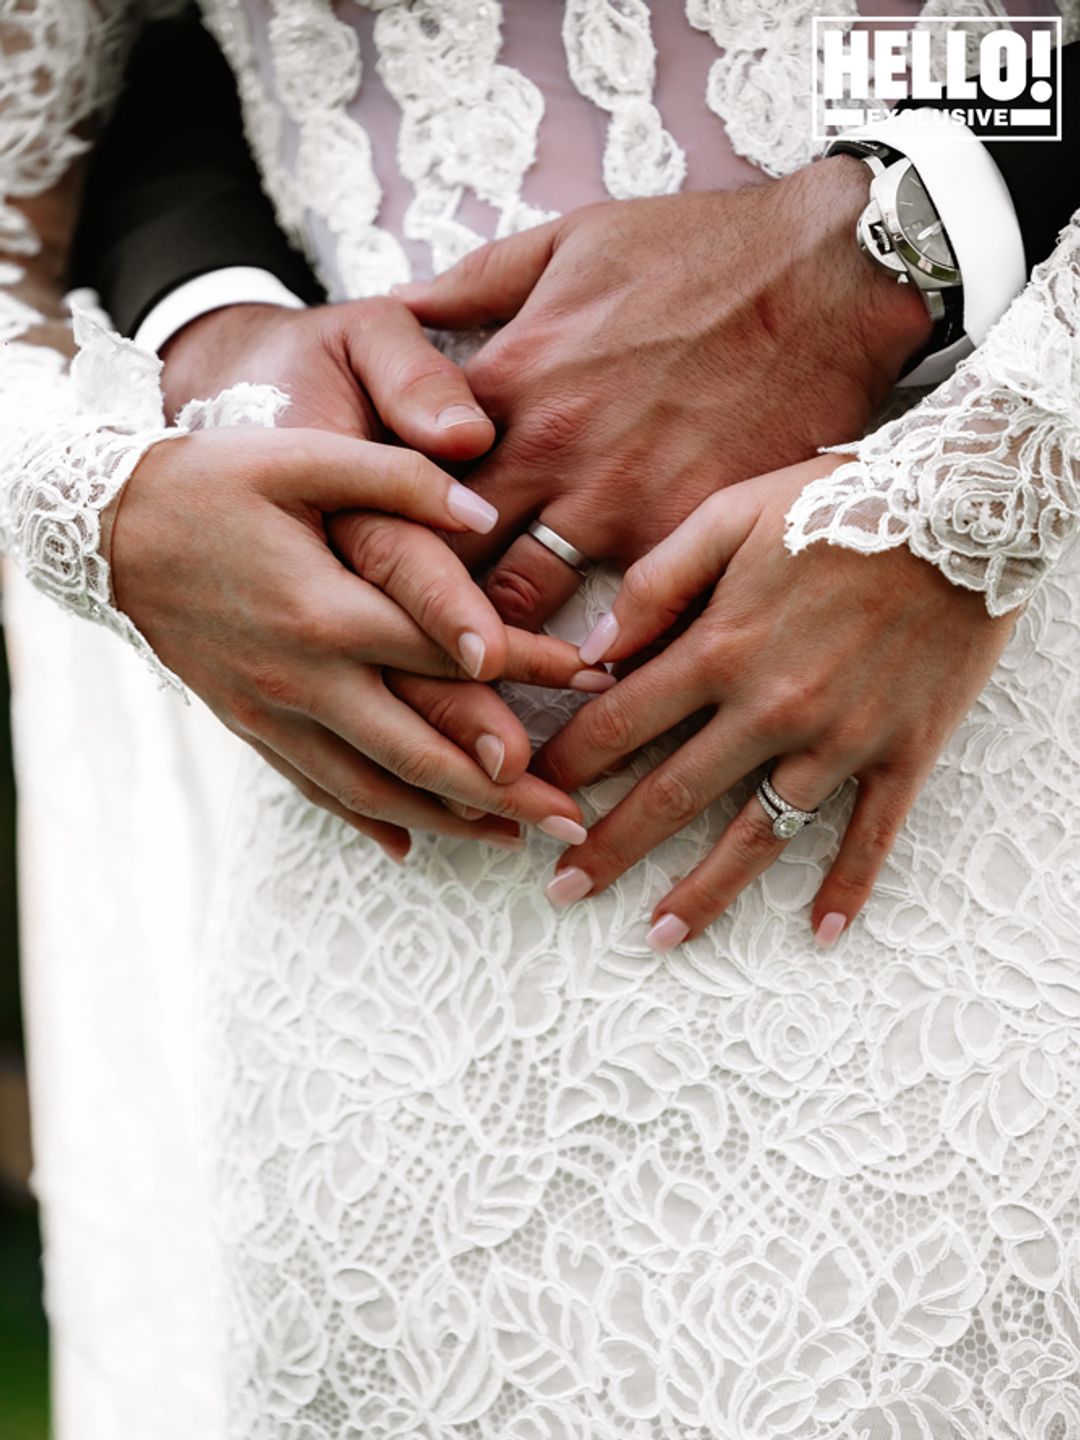 Amelia Spencer and Greg Mallett's wedding rings against her dress